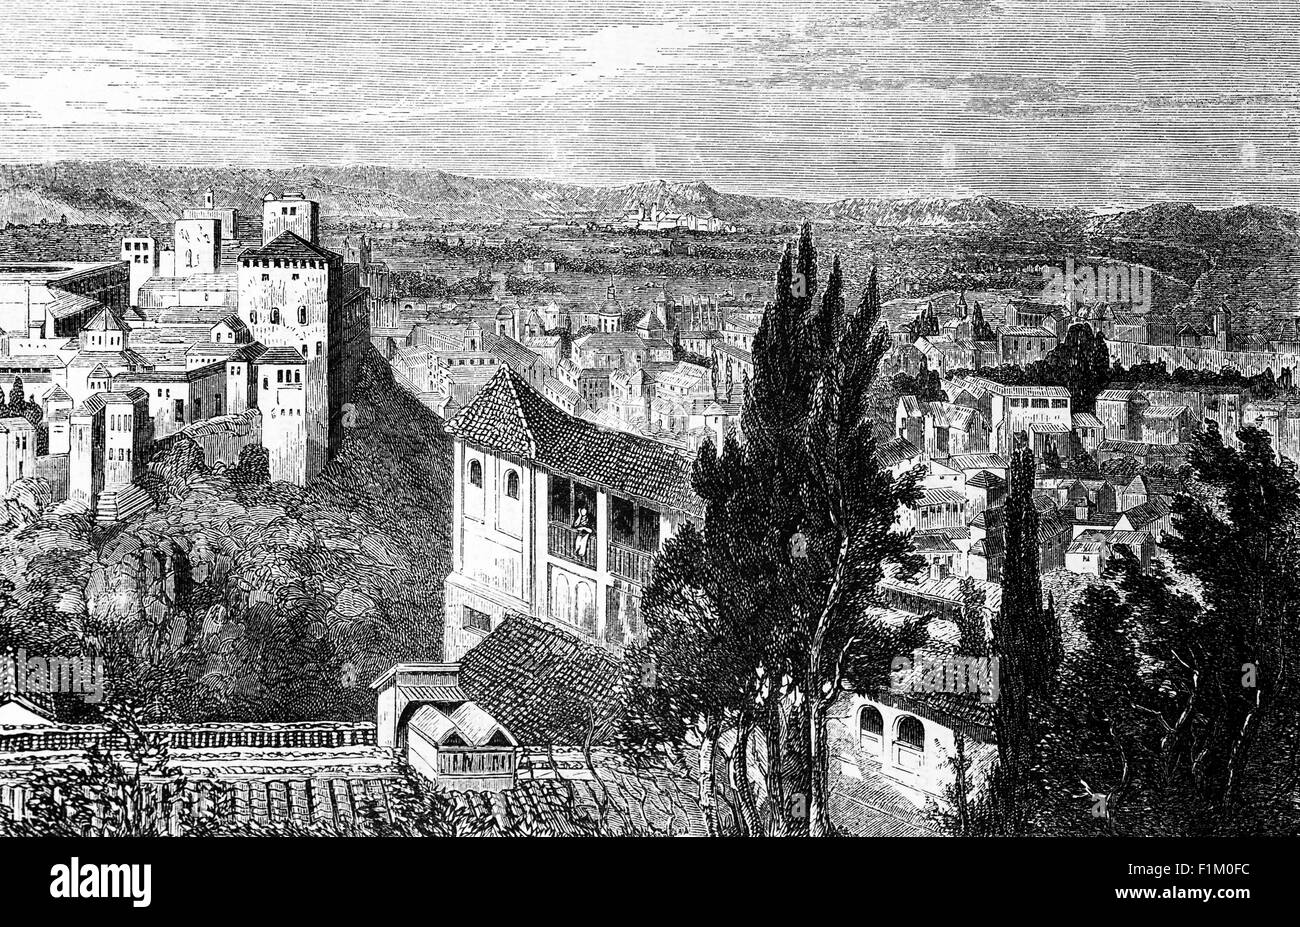 Una vista aerea del 19 ° secolo di Granada con l'Alhambra, la cittadella araba e il palazzo. Capitale della provincia di Granada, in Andalusia, Spagna, Granada si trova ai piedi della Sierra Nevada, alla confluenza di quattro fiumi, il Darro, il Genil, il Monachil e il Beiro. Foto Stock